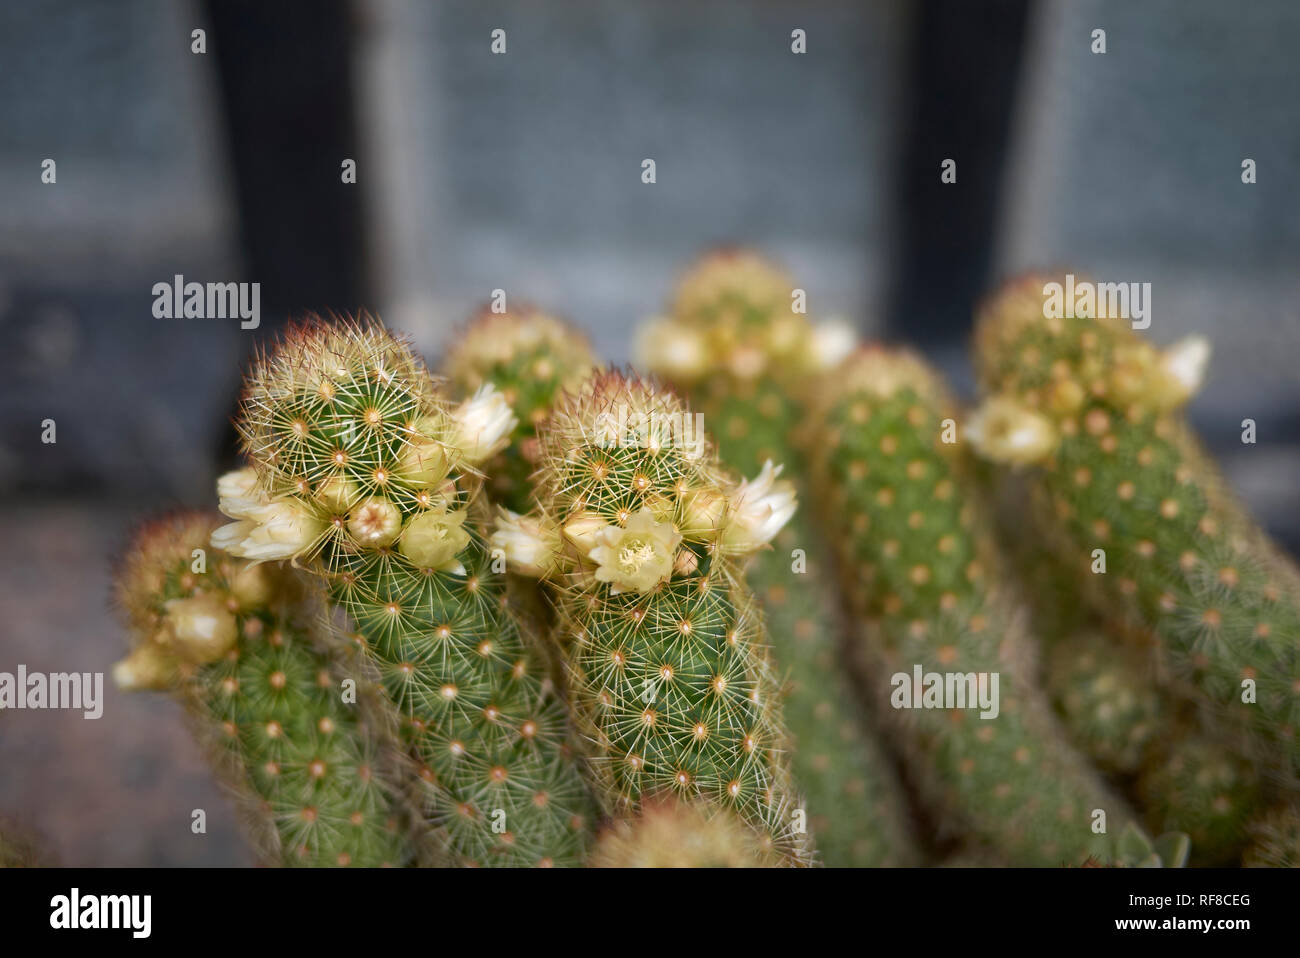 Mammillaria elongata cactus with yellow flower Stock Photo